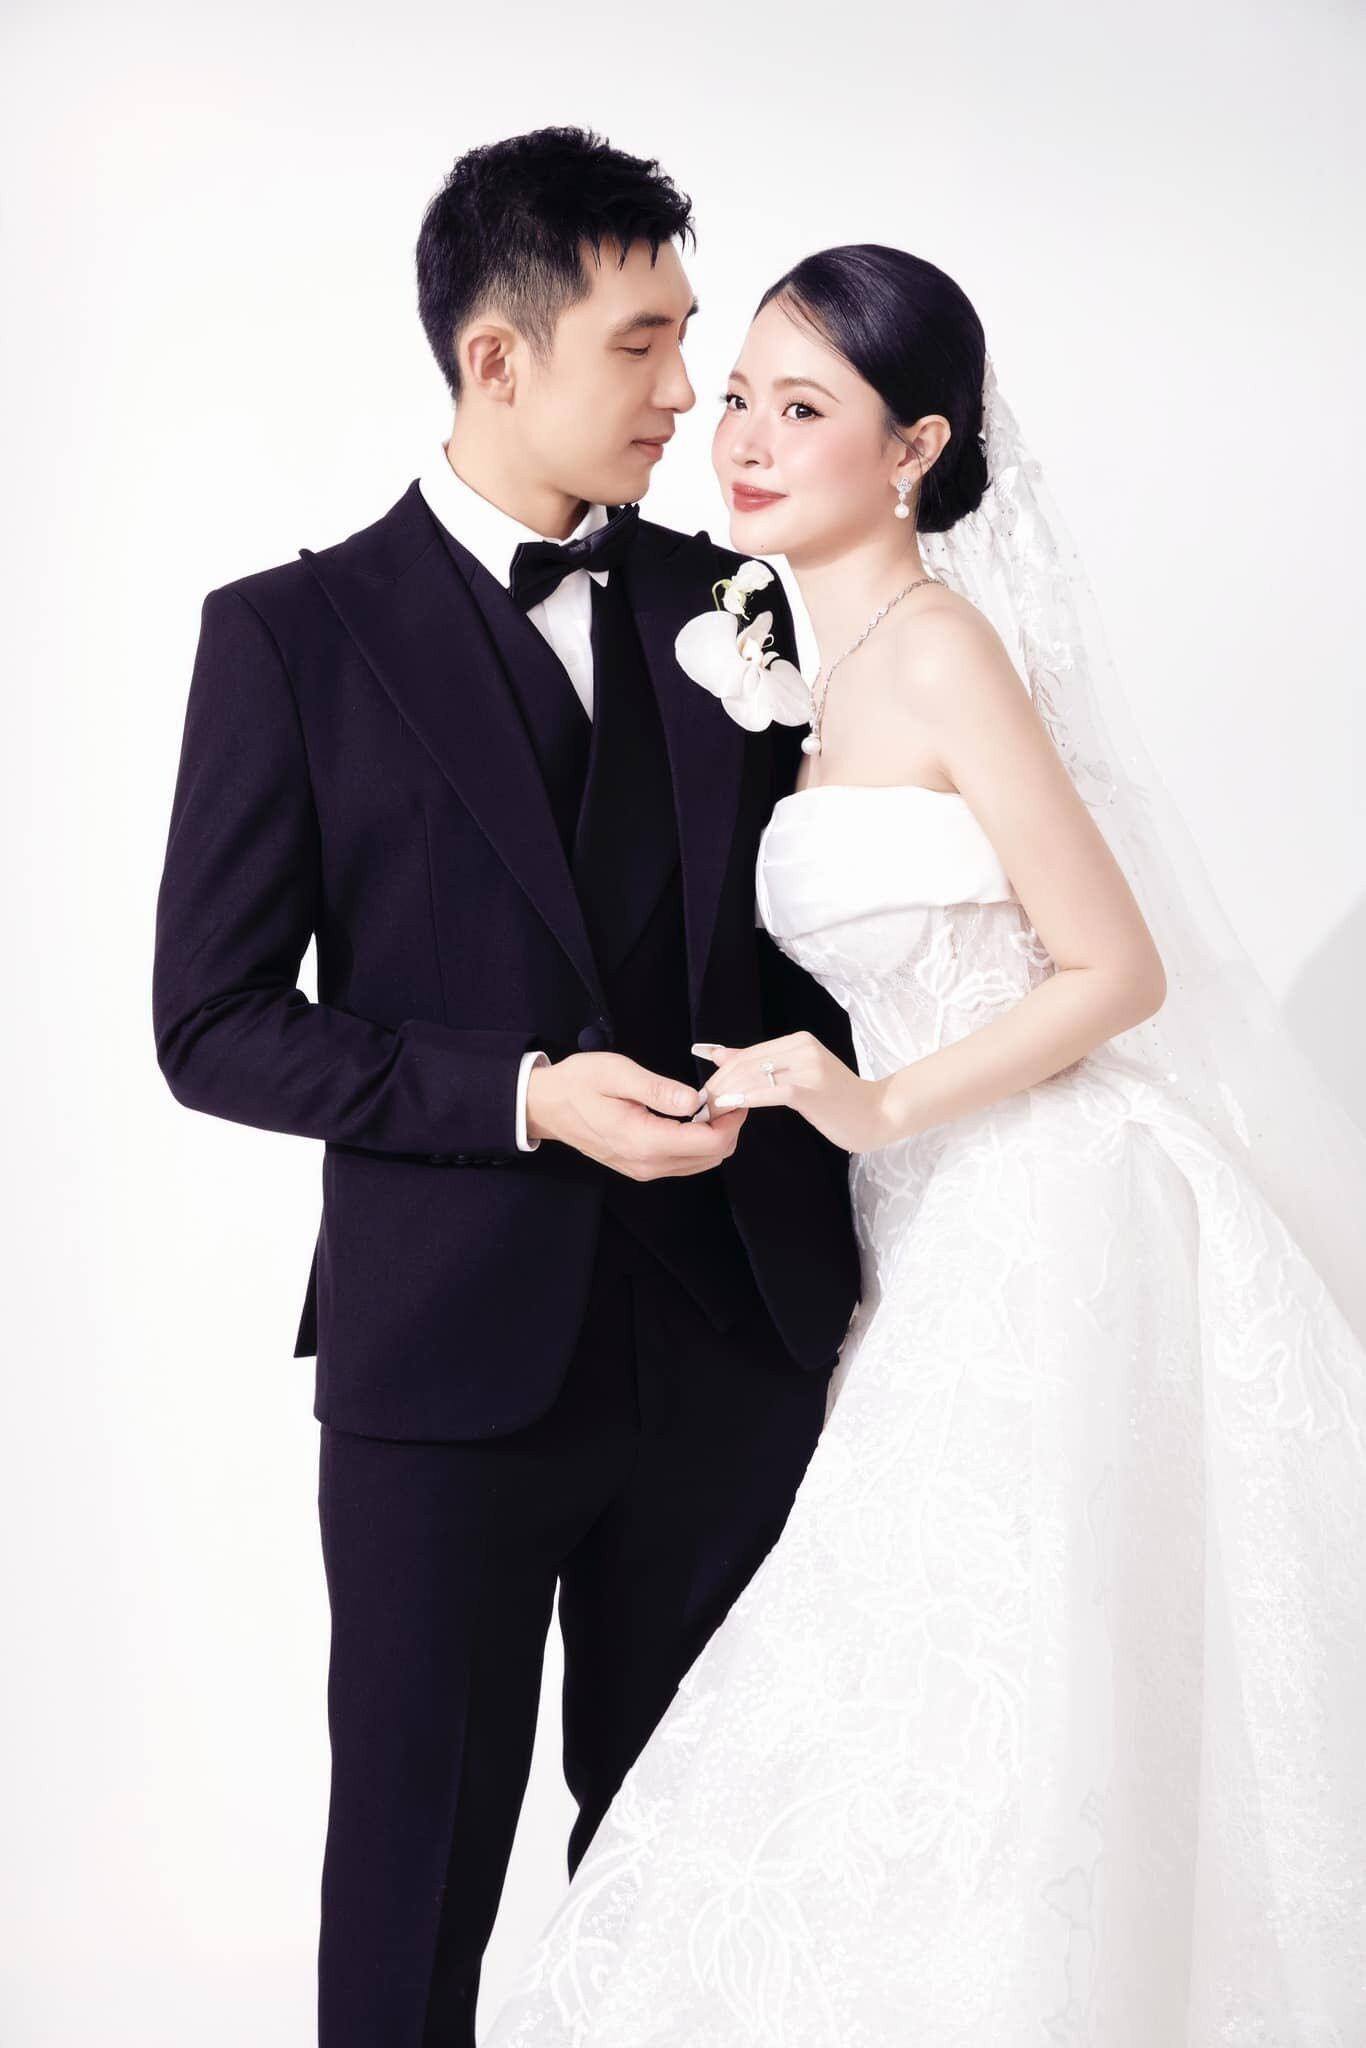 Midu vừa chia sẻ bộ ảnh cưới thứ 4 cùng thiếu gia Minh Đạt. Bộ ảnh cưới theo phong cách tối giản được thực hiện tại studio.